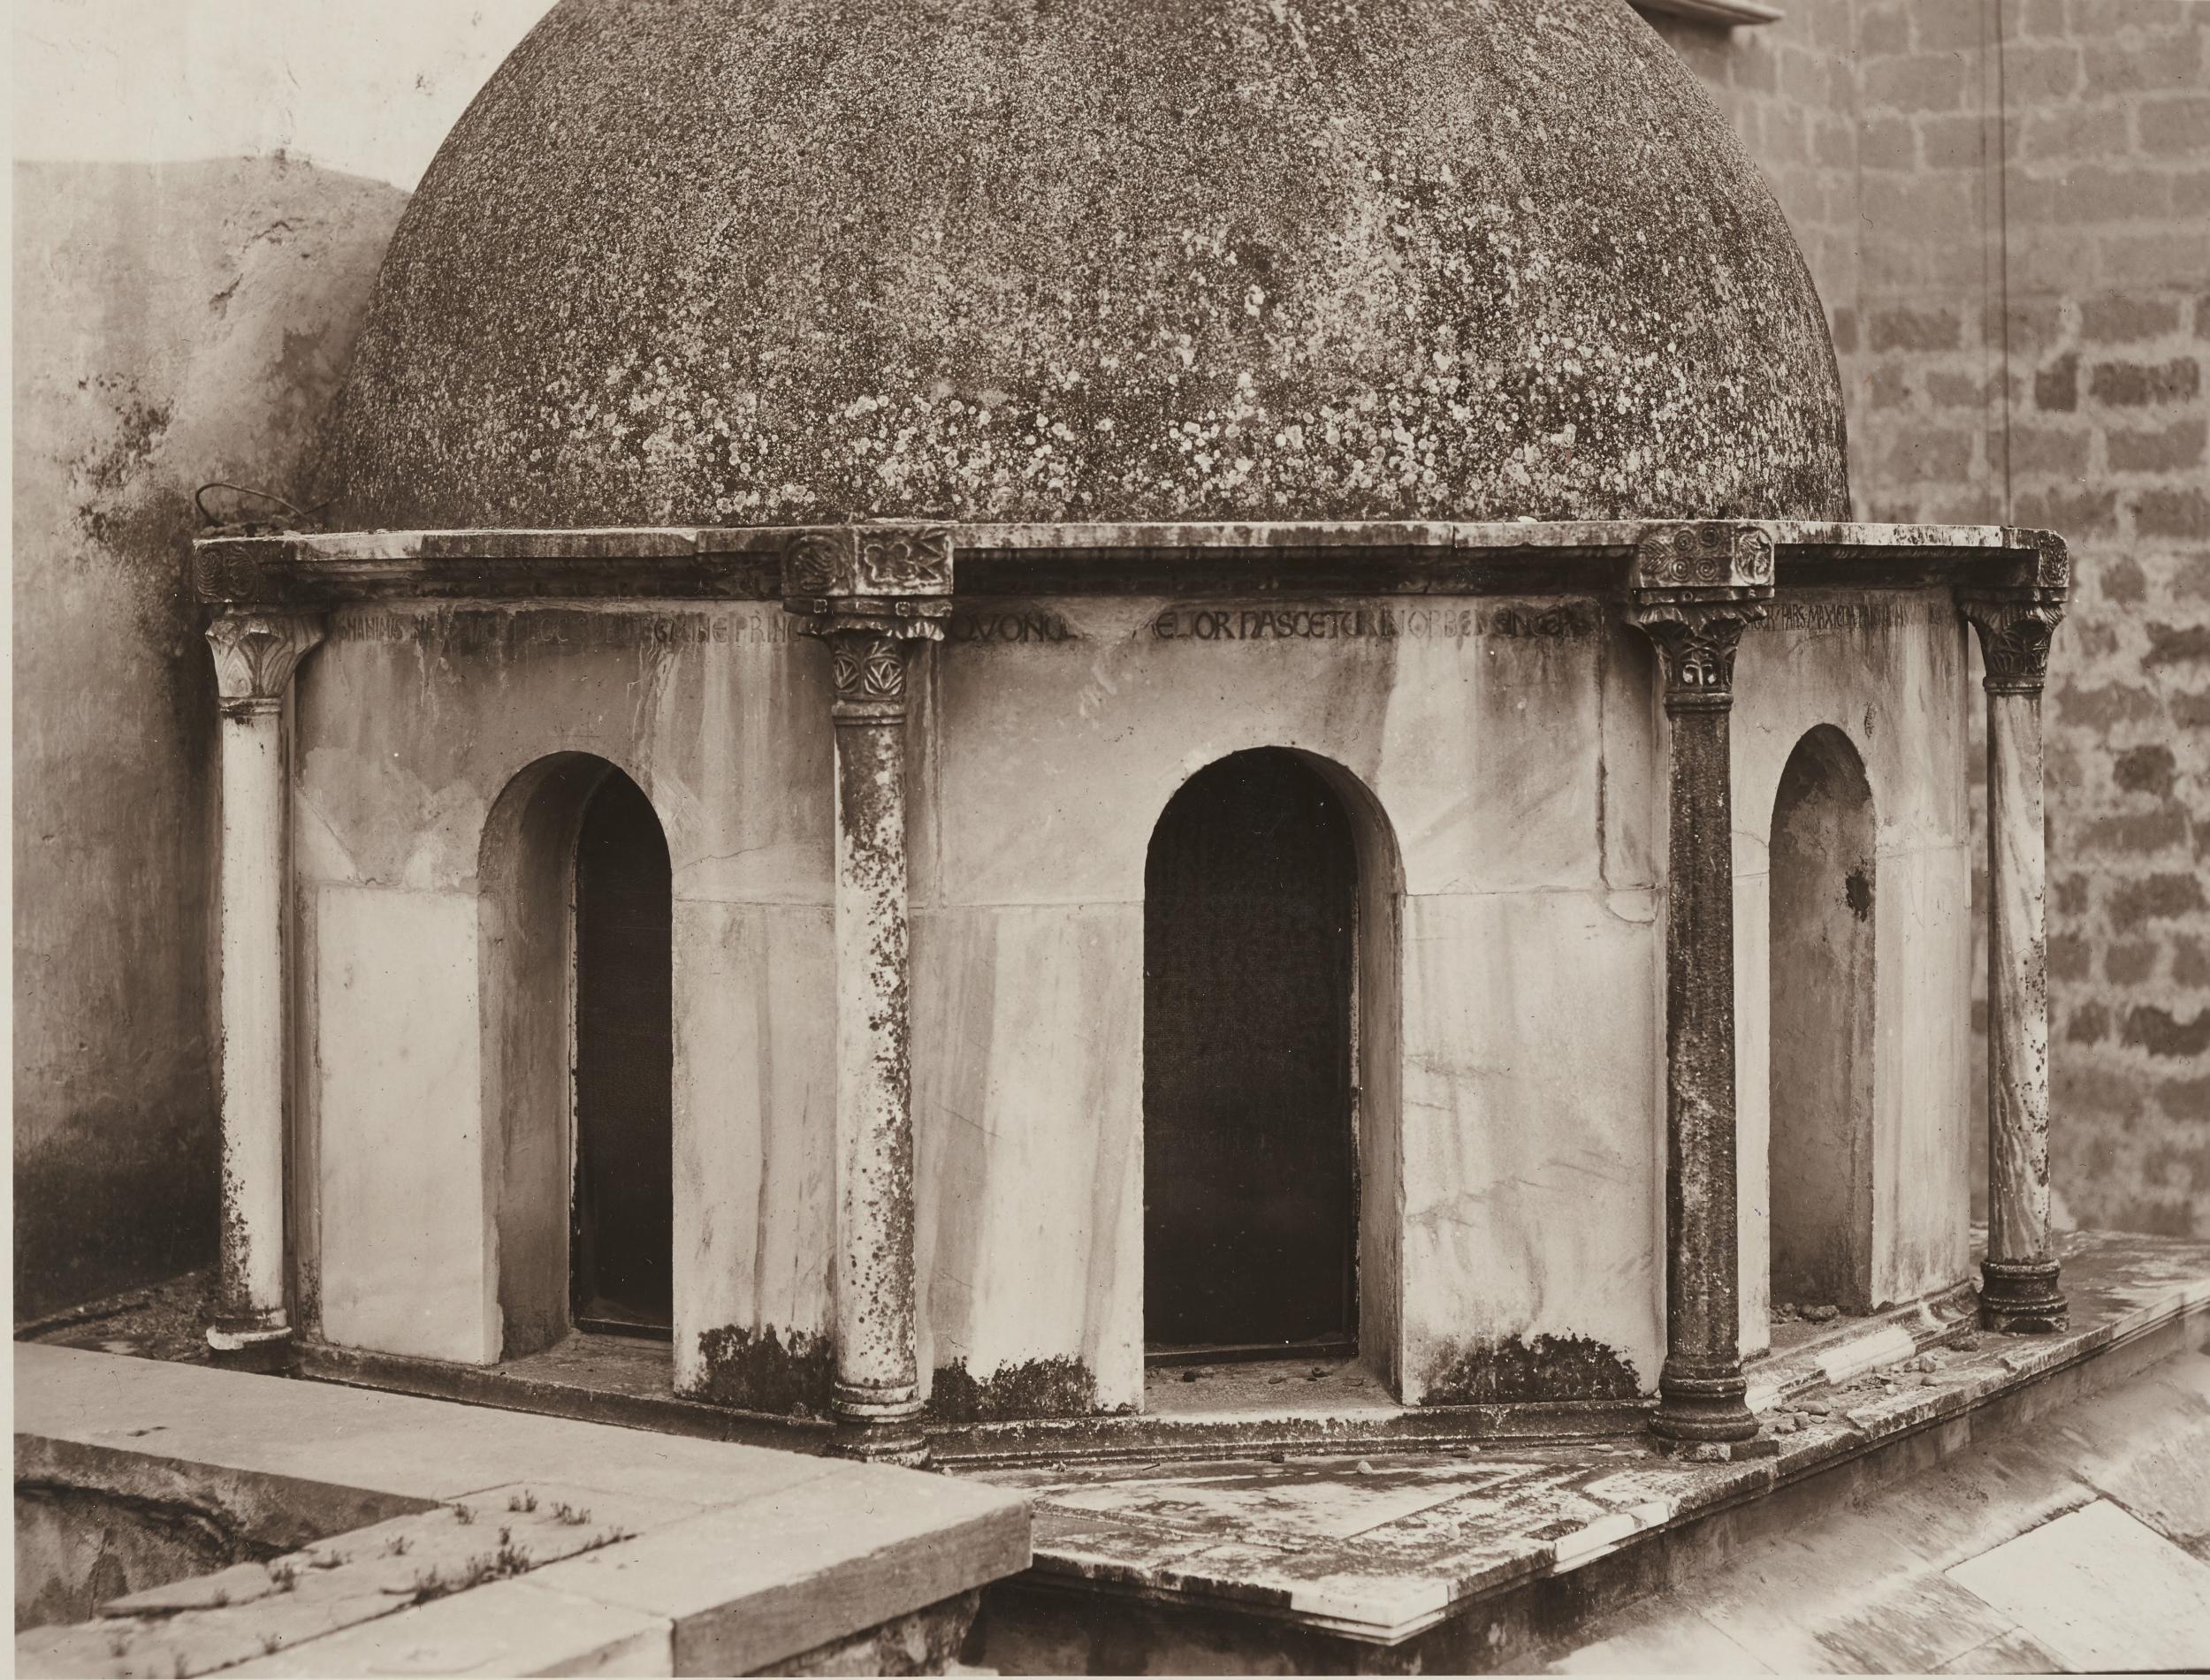 Antonio Ceccato, Canosa di Puglia - Cattedrale San Sabino, esterno, tomba di Boemondo, 1926-1950, gelatina ai sali d'argento/carta, 16,3x21,3 cm, MPI309696